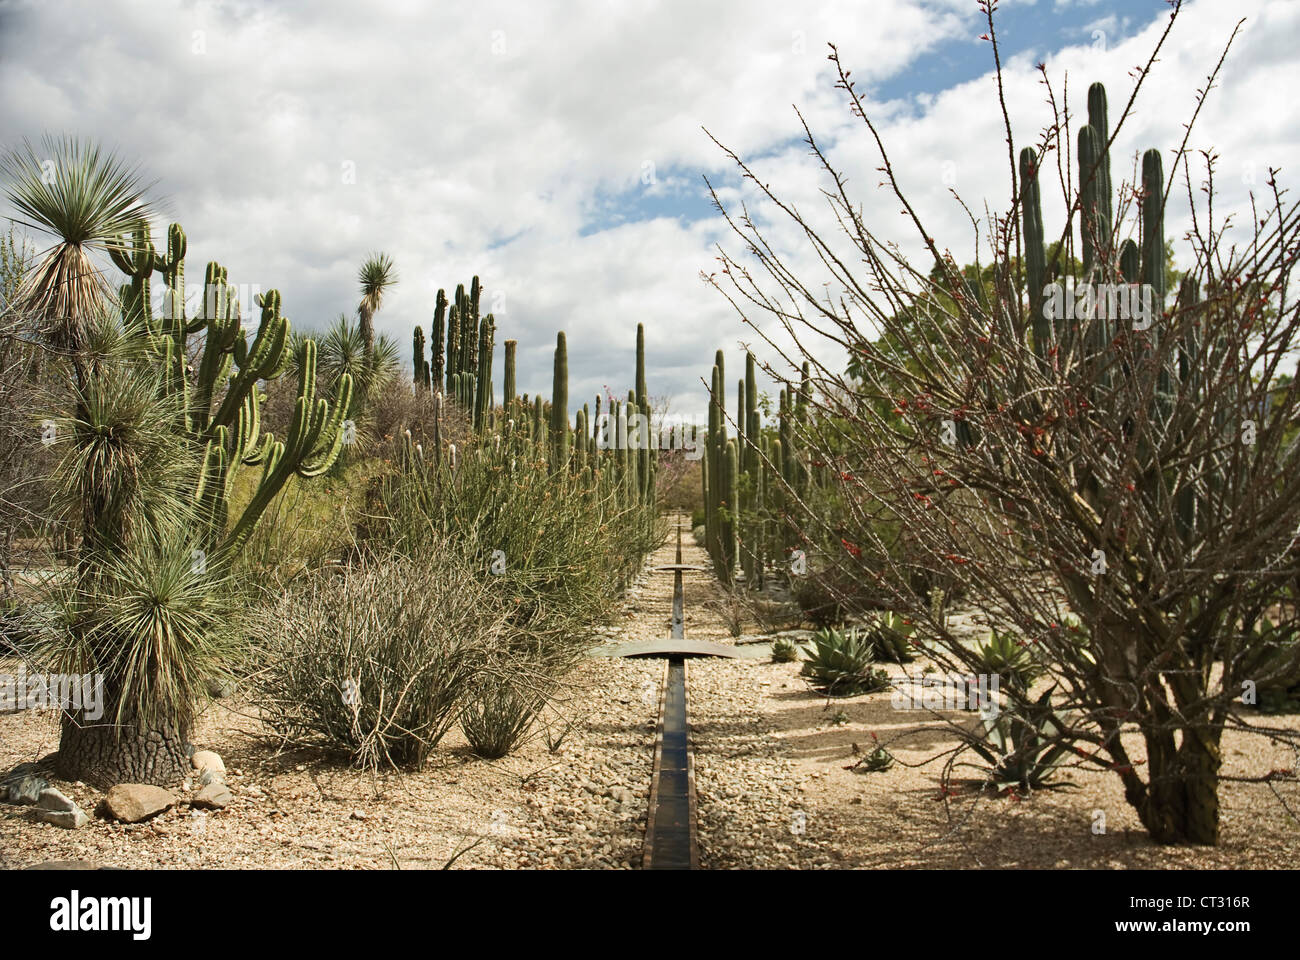 Carnegiea gigantea, Cactus, Saguaro cactus Stock Photo